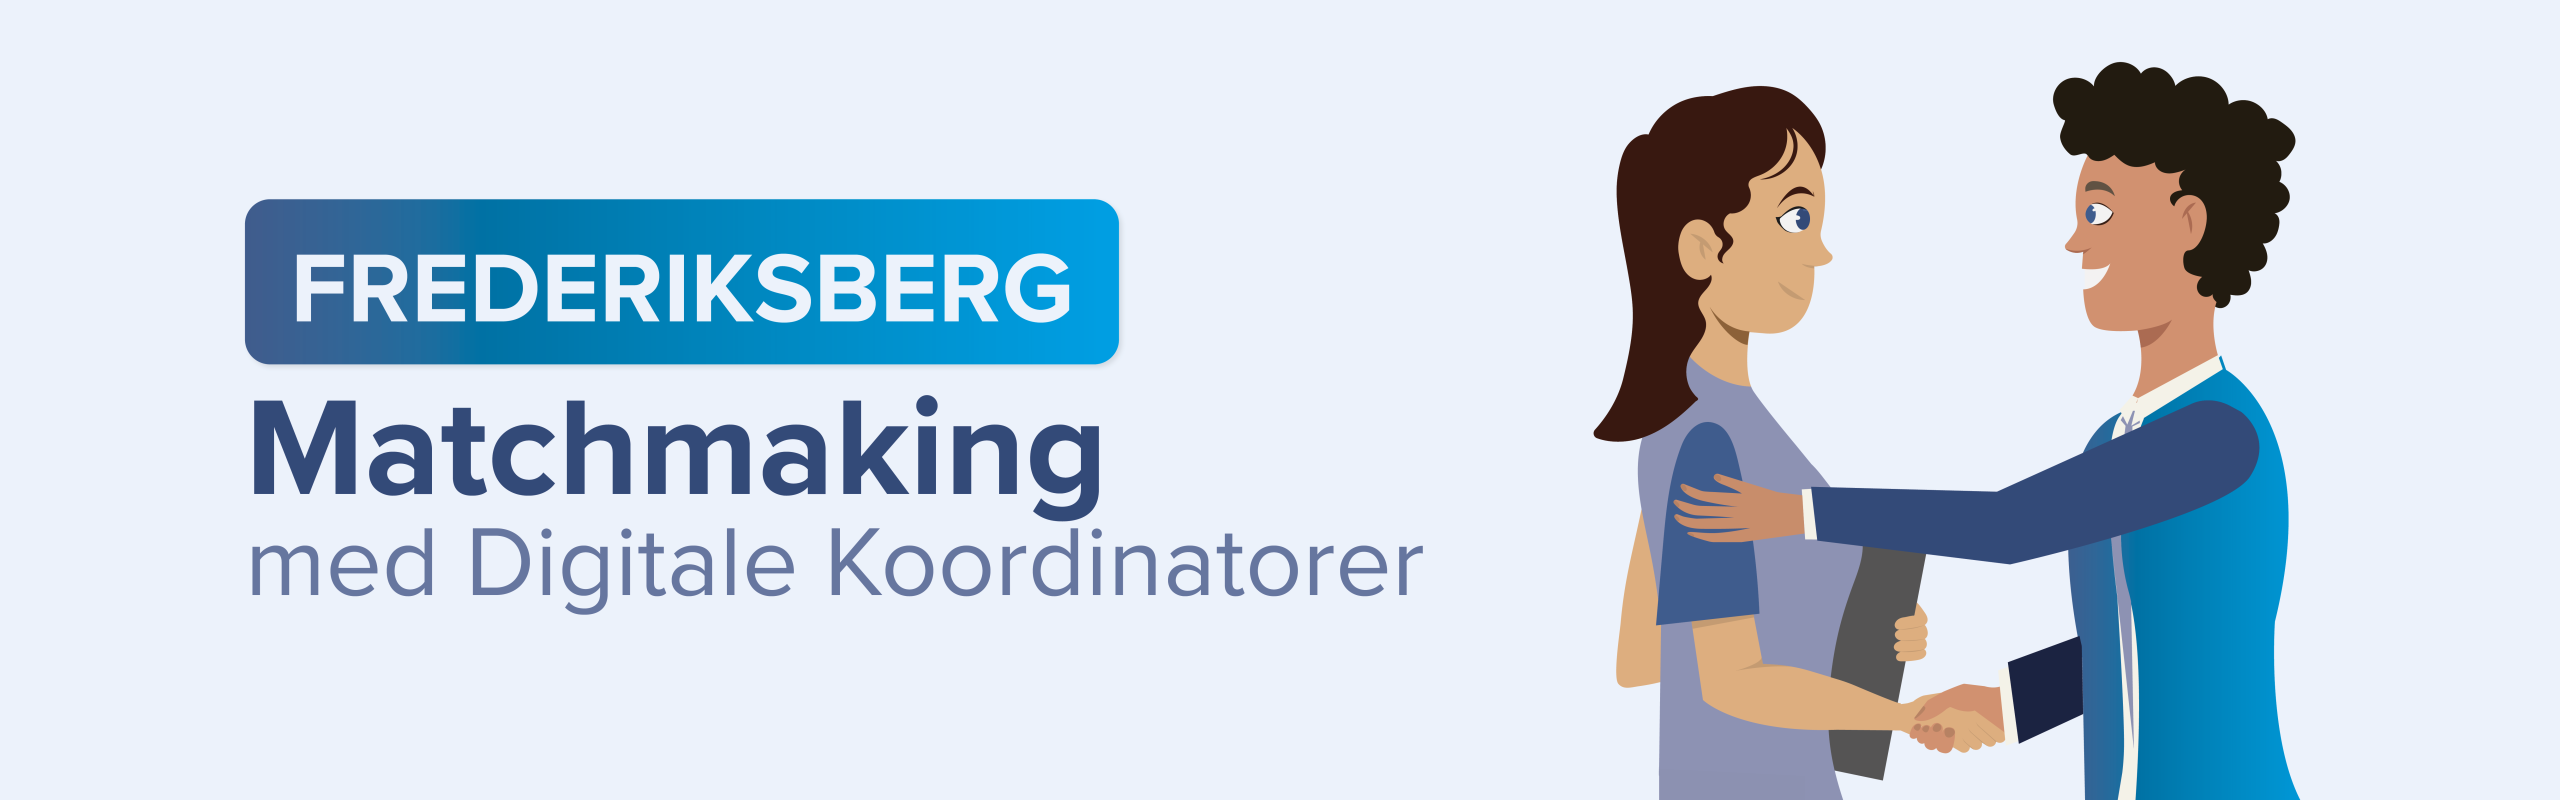 Matchmaking med Digitale Koordinatorer på Frederiksberg